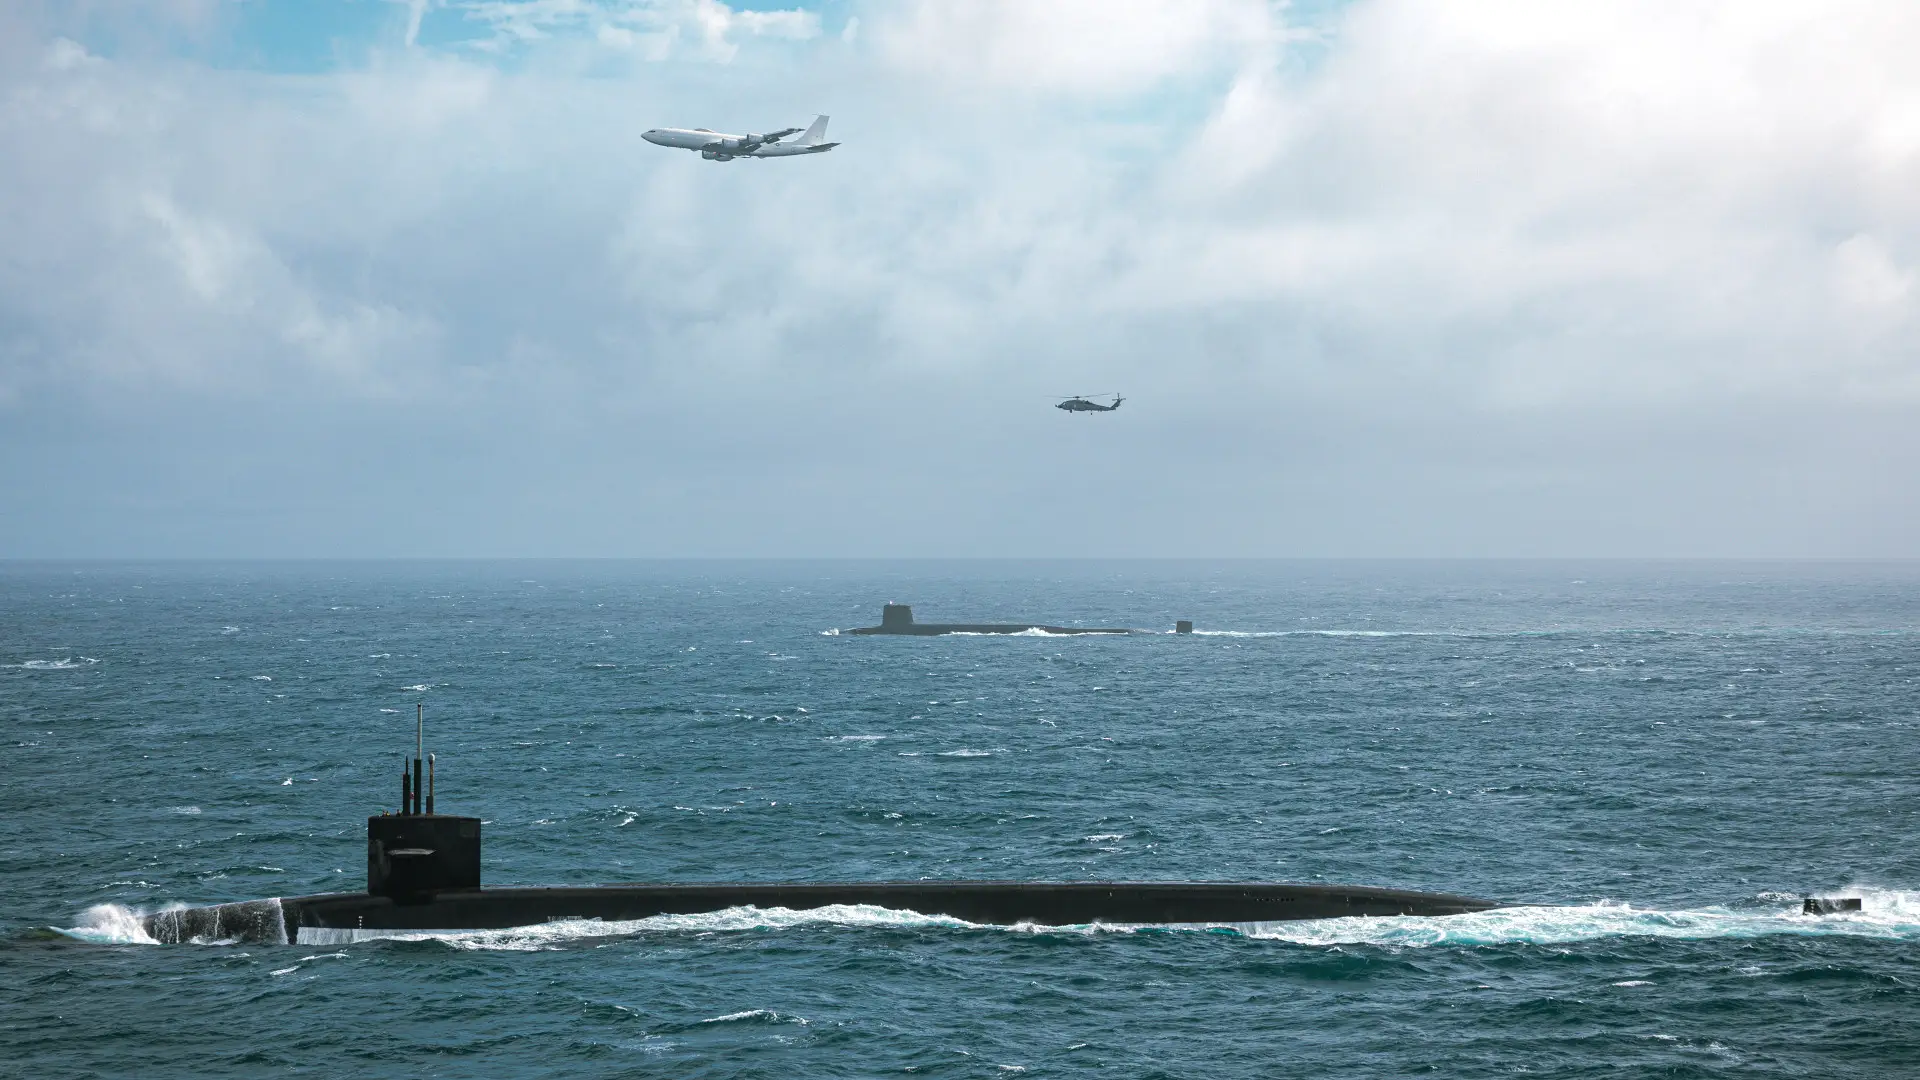 Gli Stati Uniti e il Regno Unito hanno condotto esercitazioni con i sottomarini USS Tennessee e Vanguard, che trasportano missili Trident II con testate nucleari, e un aereo Boeing E-6B Mercury ha sorvolato le esercitazioni.